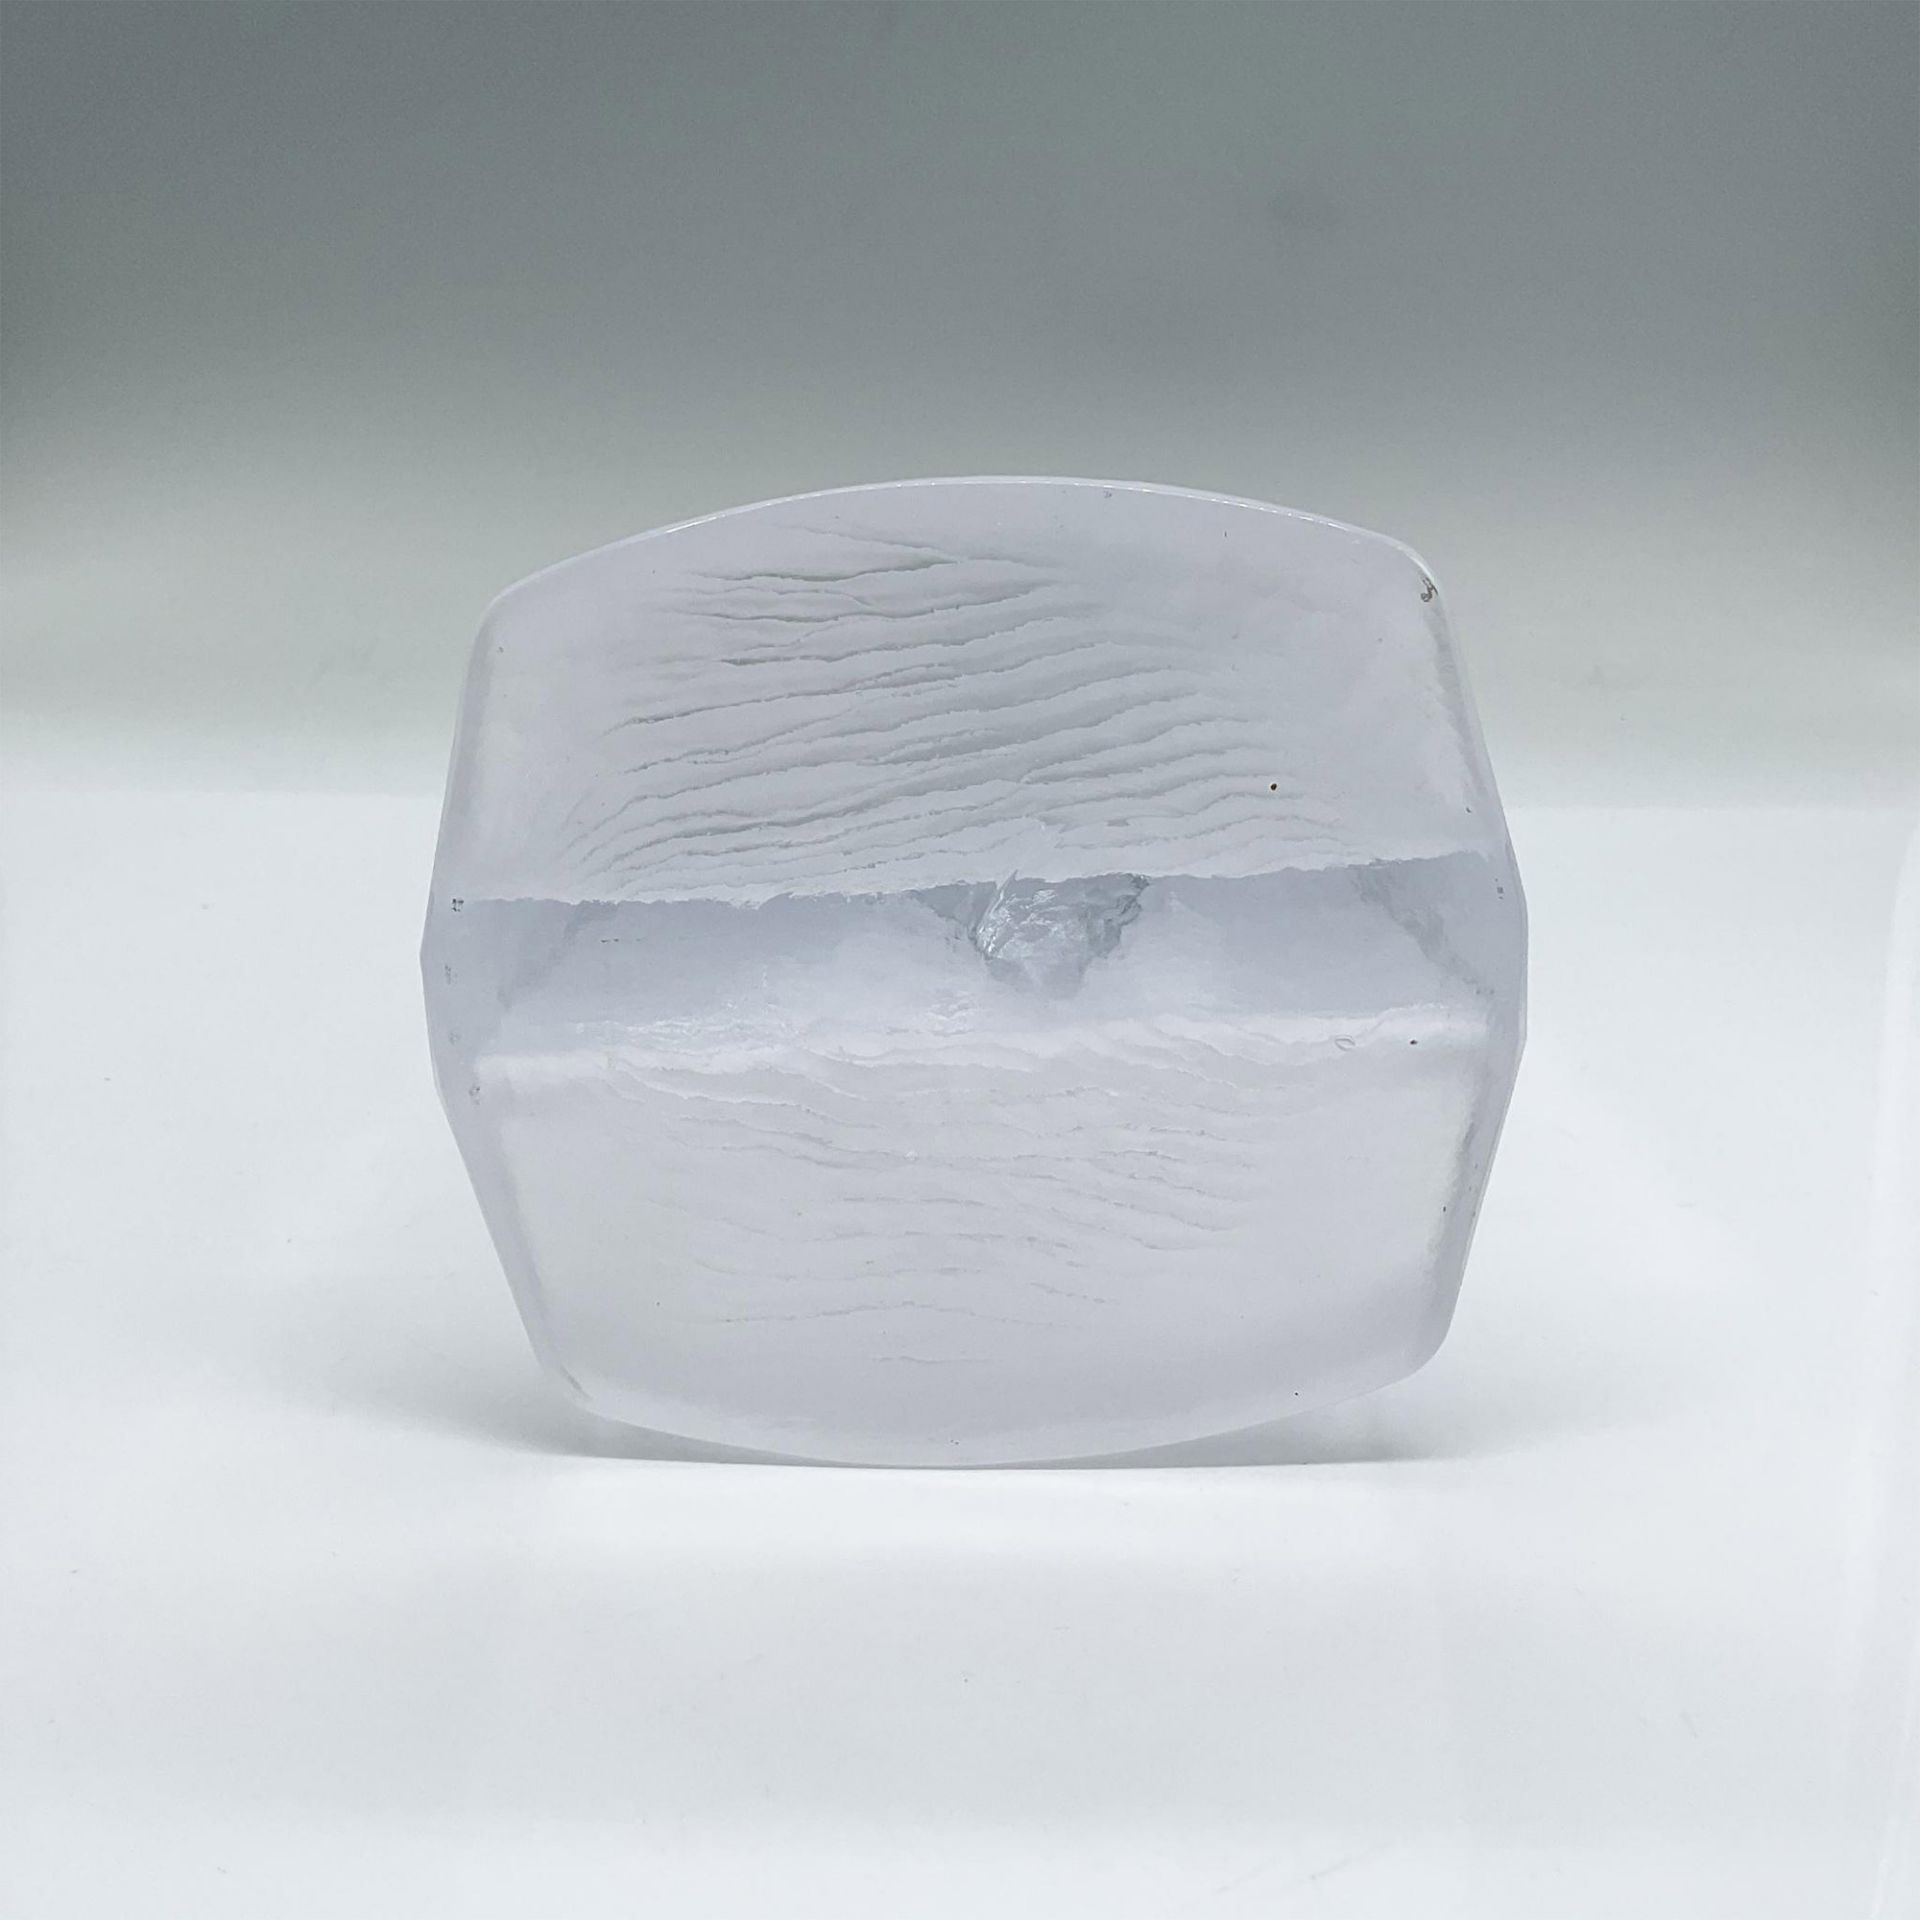 Kosta Boda Glass Candleholder, Ice Age - Image 3 of 3